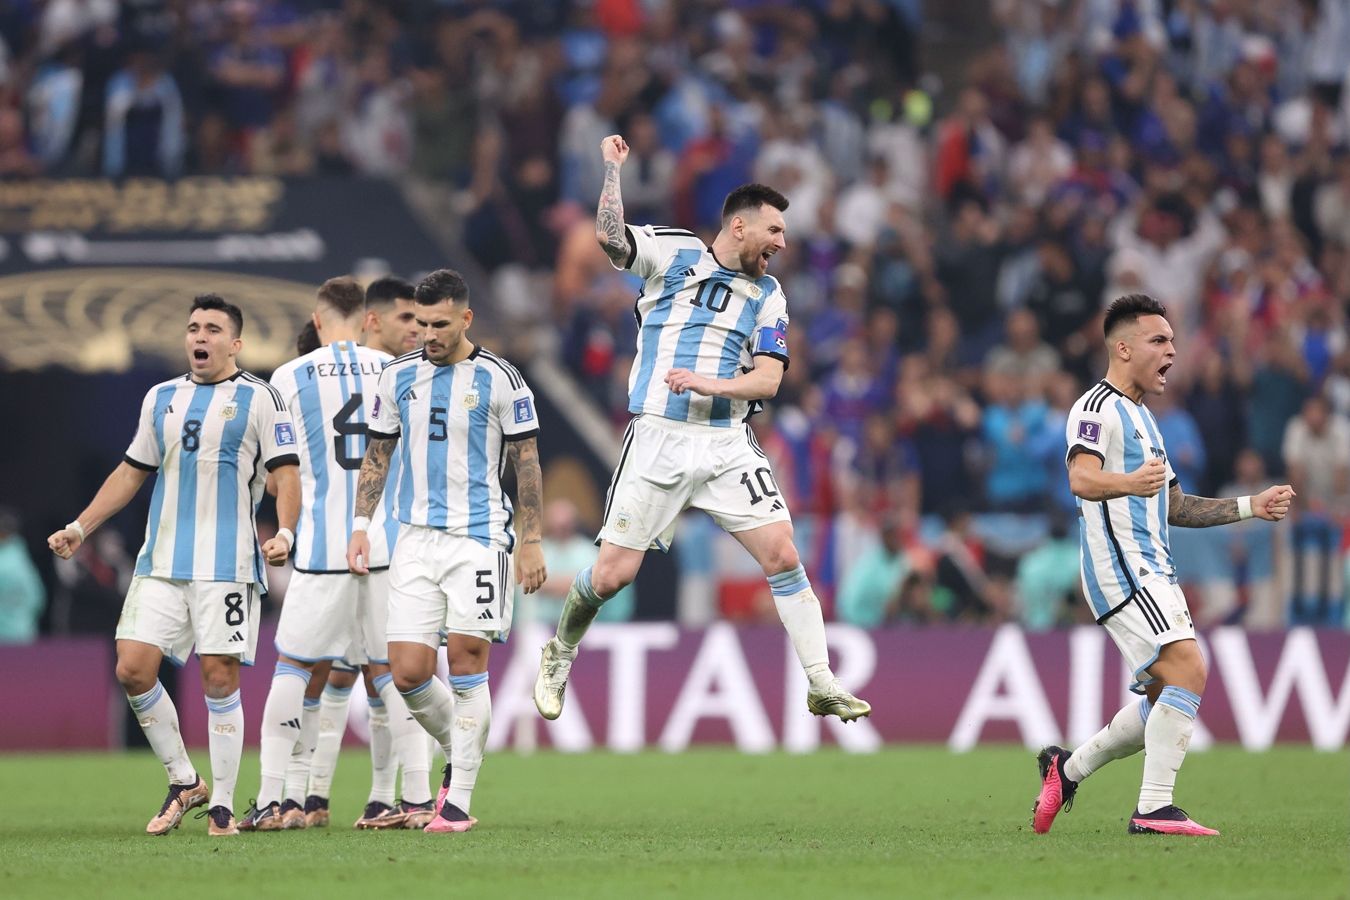 Месси и Ди Мария — в заявке сборной Аргентины на товарищеские матчи перед Кубком Америки